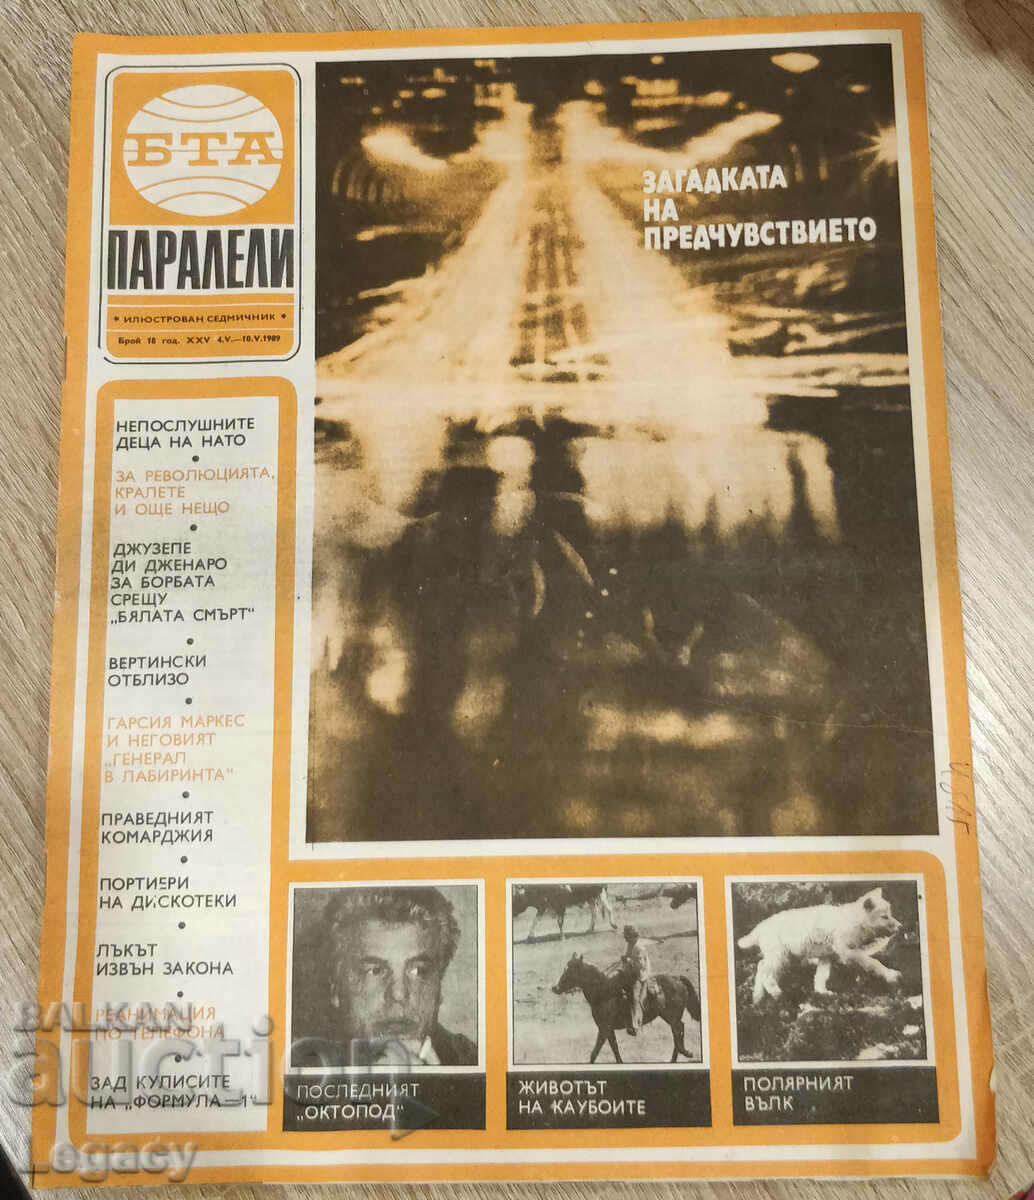 1989 BTA Parallels magazine, issue 18